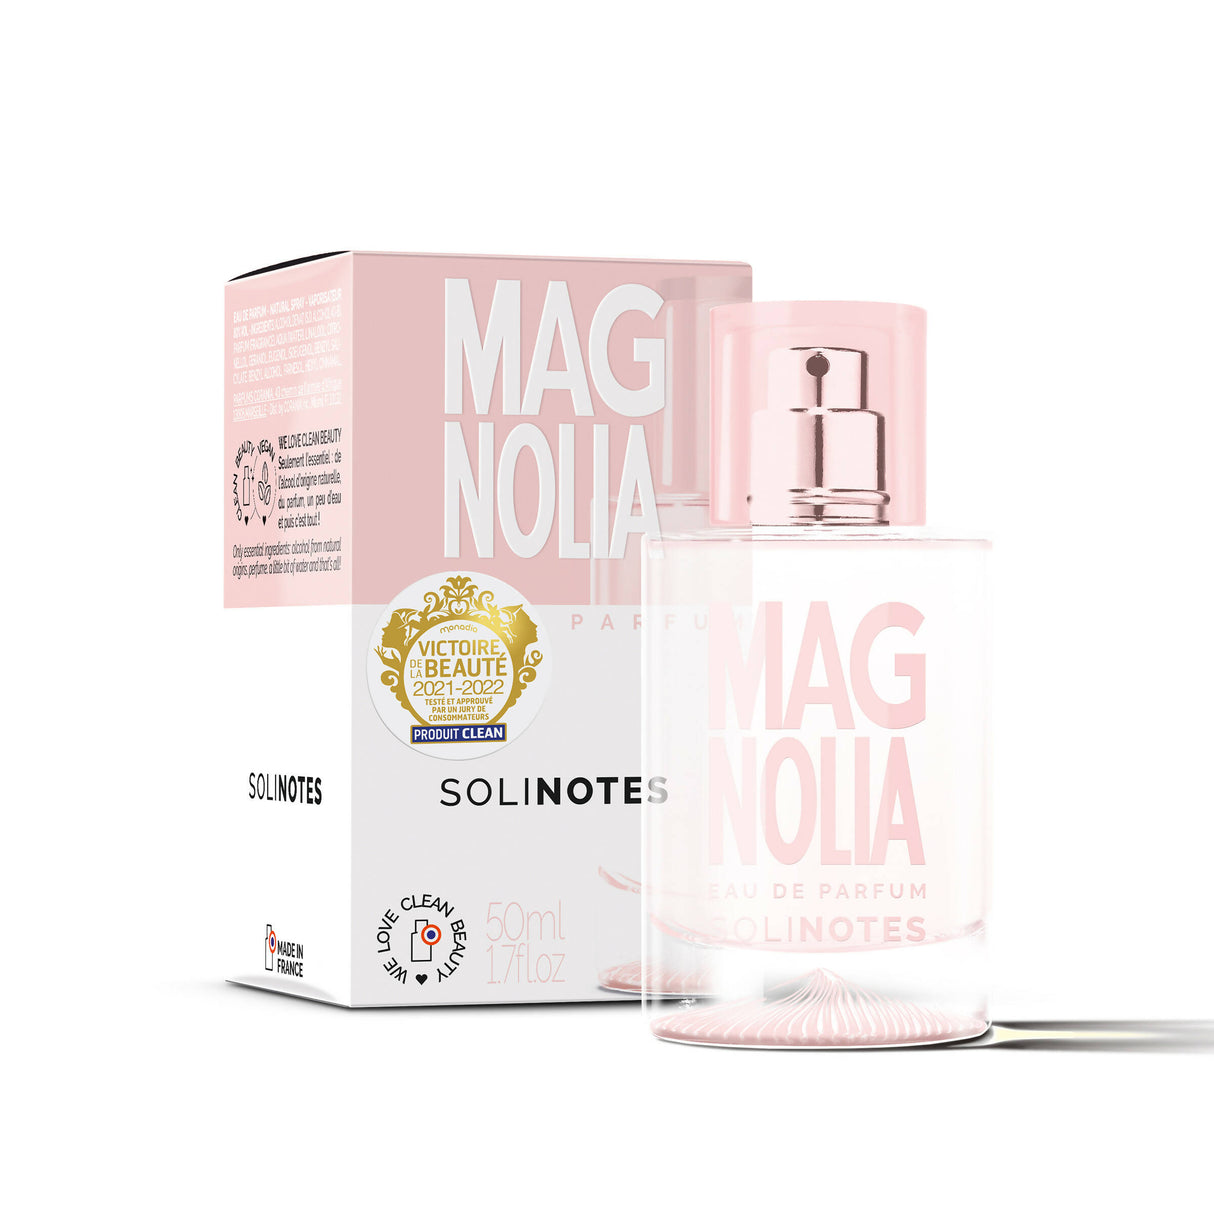 Solinotes - Magnolia Eau de Parfum 1.7 oz - CLEAN BEAUTY